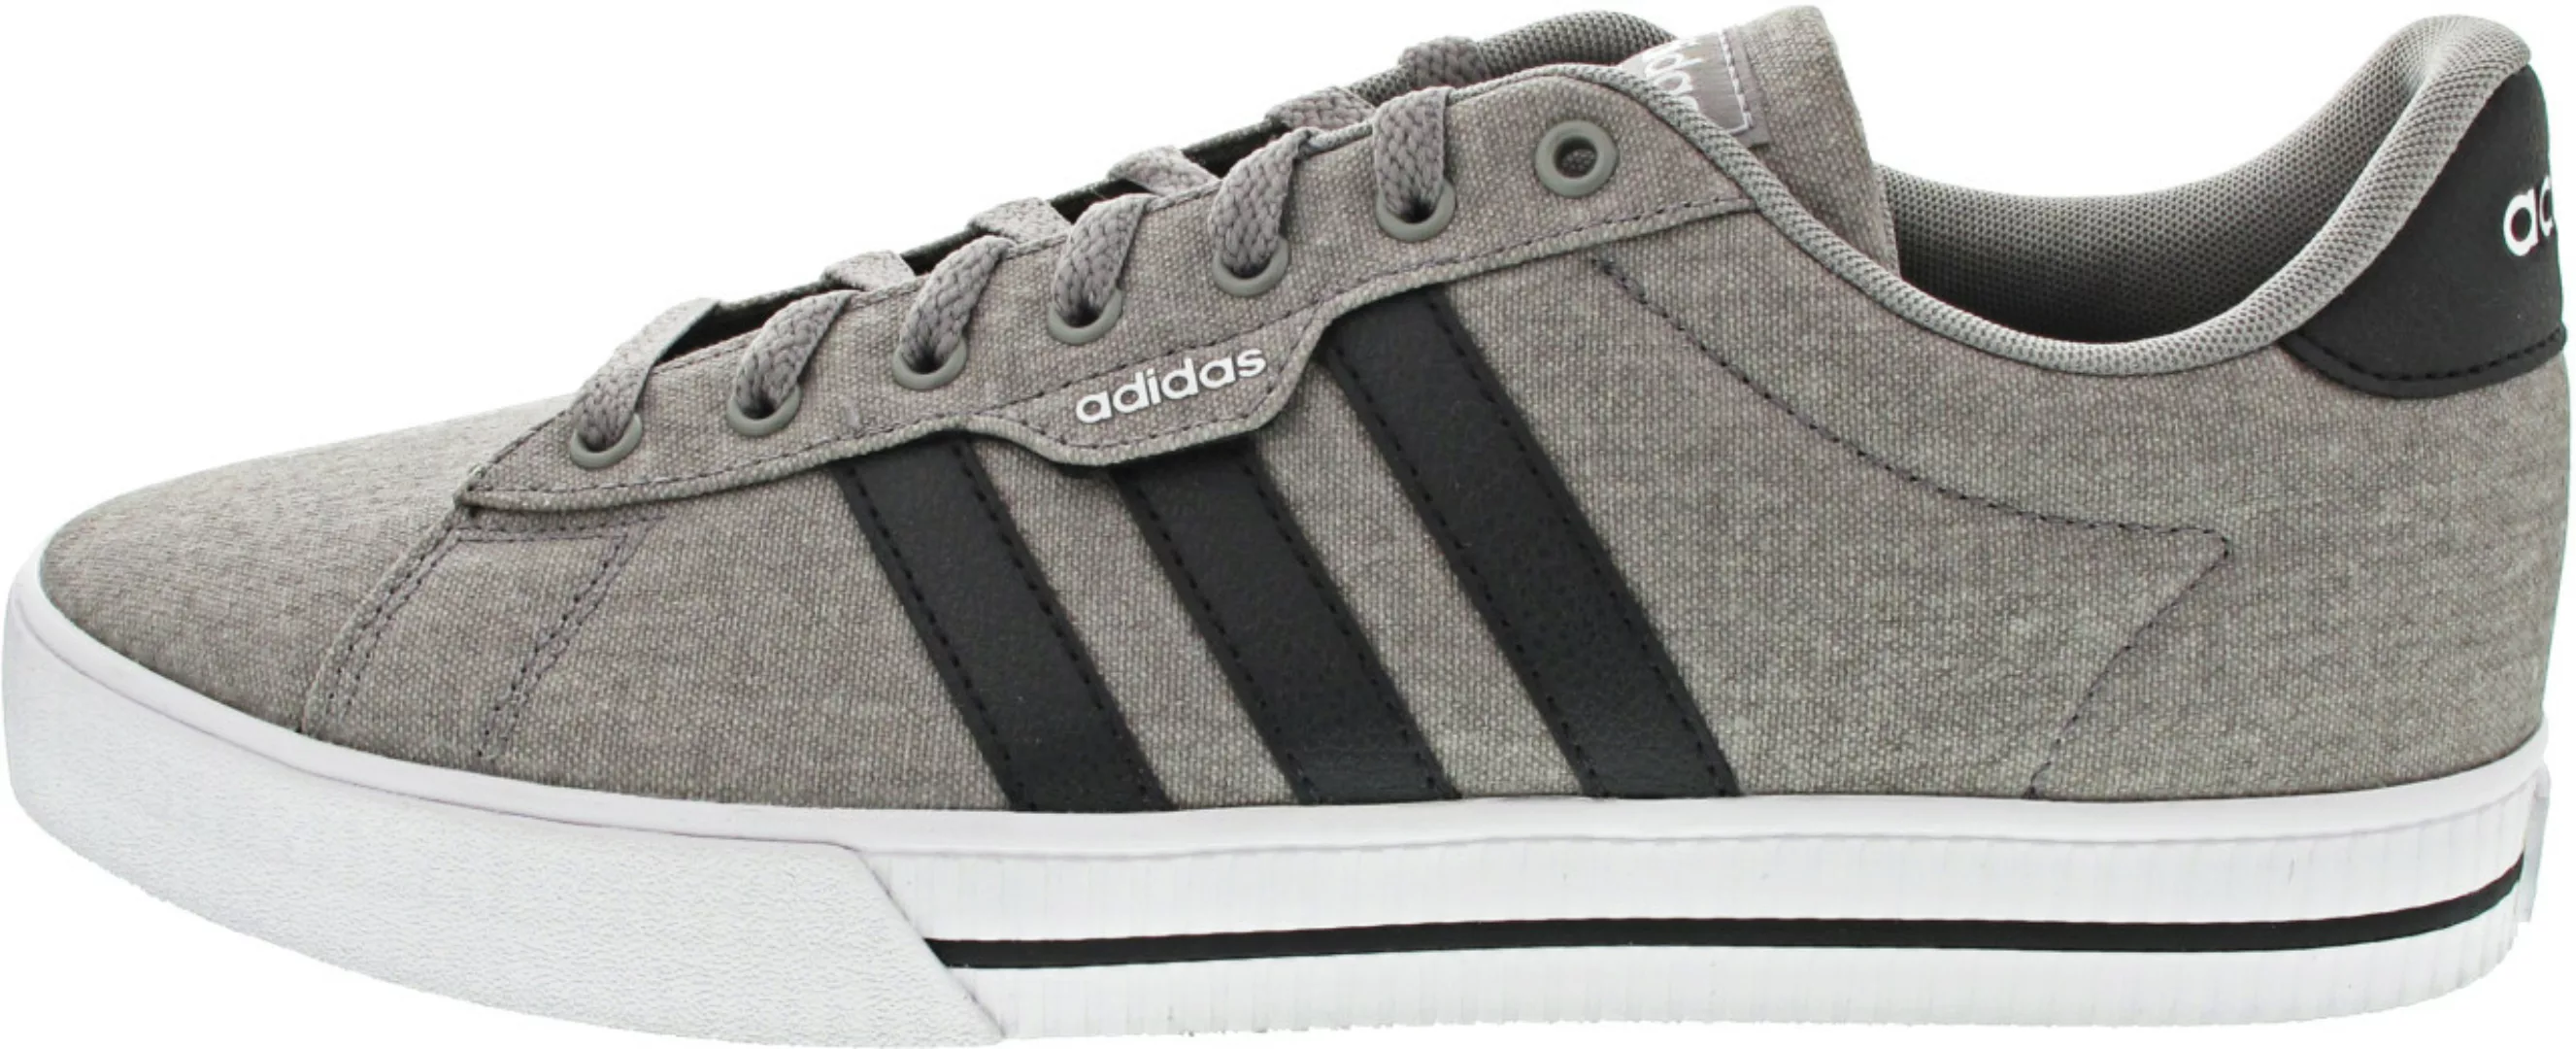 Adidas Daily 3.0 Sportschuhe EU 40 2/3 Dove Grey / Core Black / Ftwr White günstig online kaufen